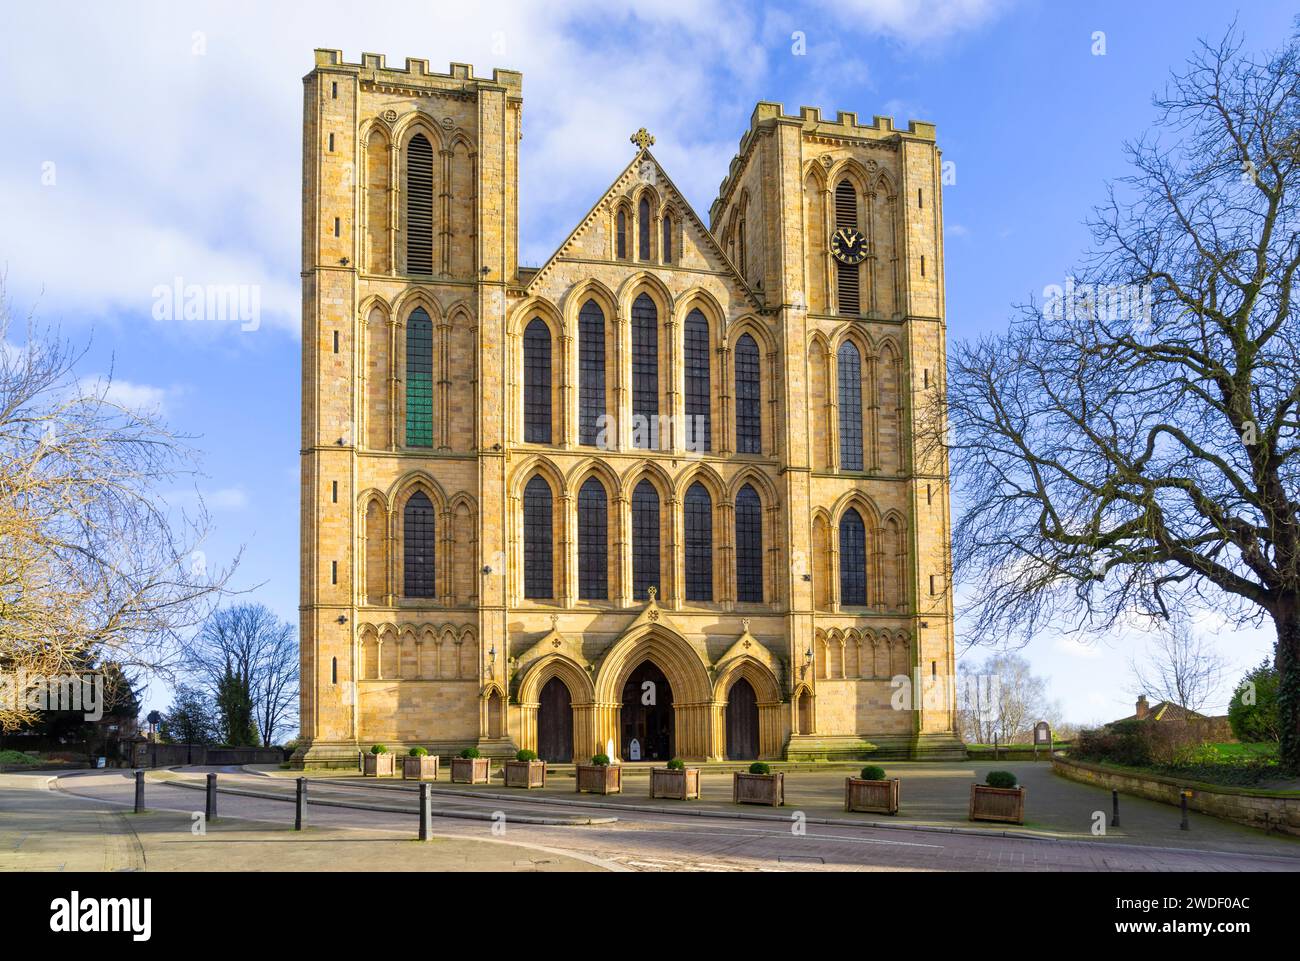 Extérieur de la cathédrale de Ripon sur le front ouest Cathédrale de l'Église d'Angleterre à Ripon North Yorkshire Angleterre GB Europe Banque D'Images